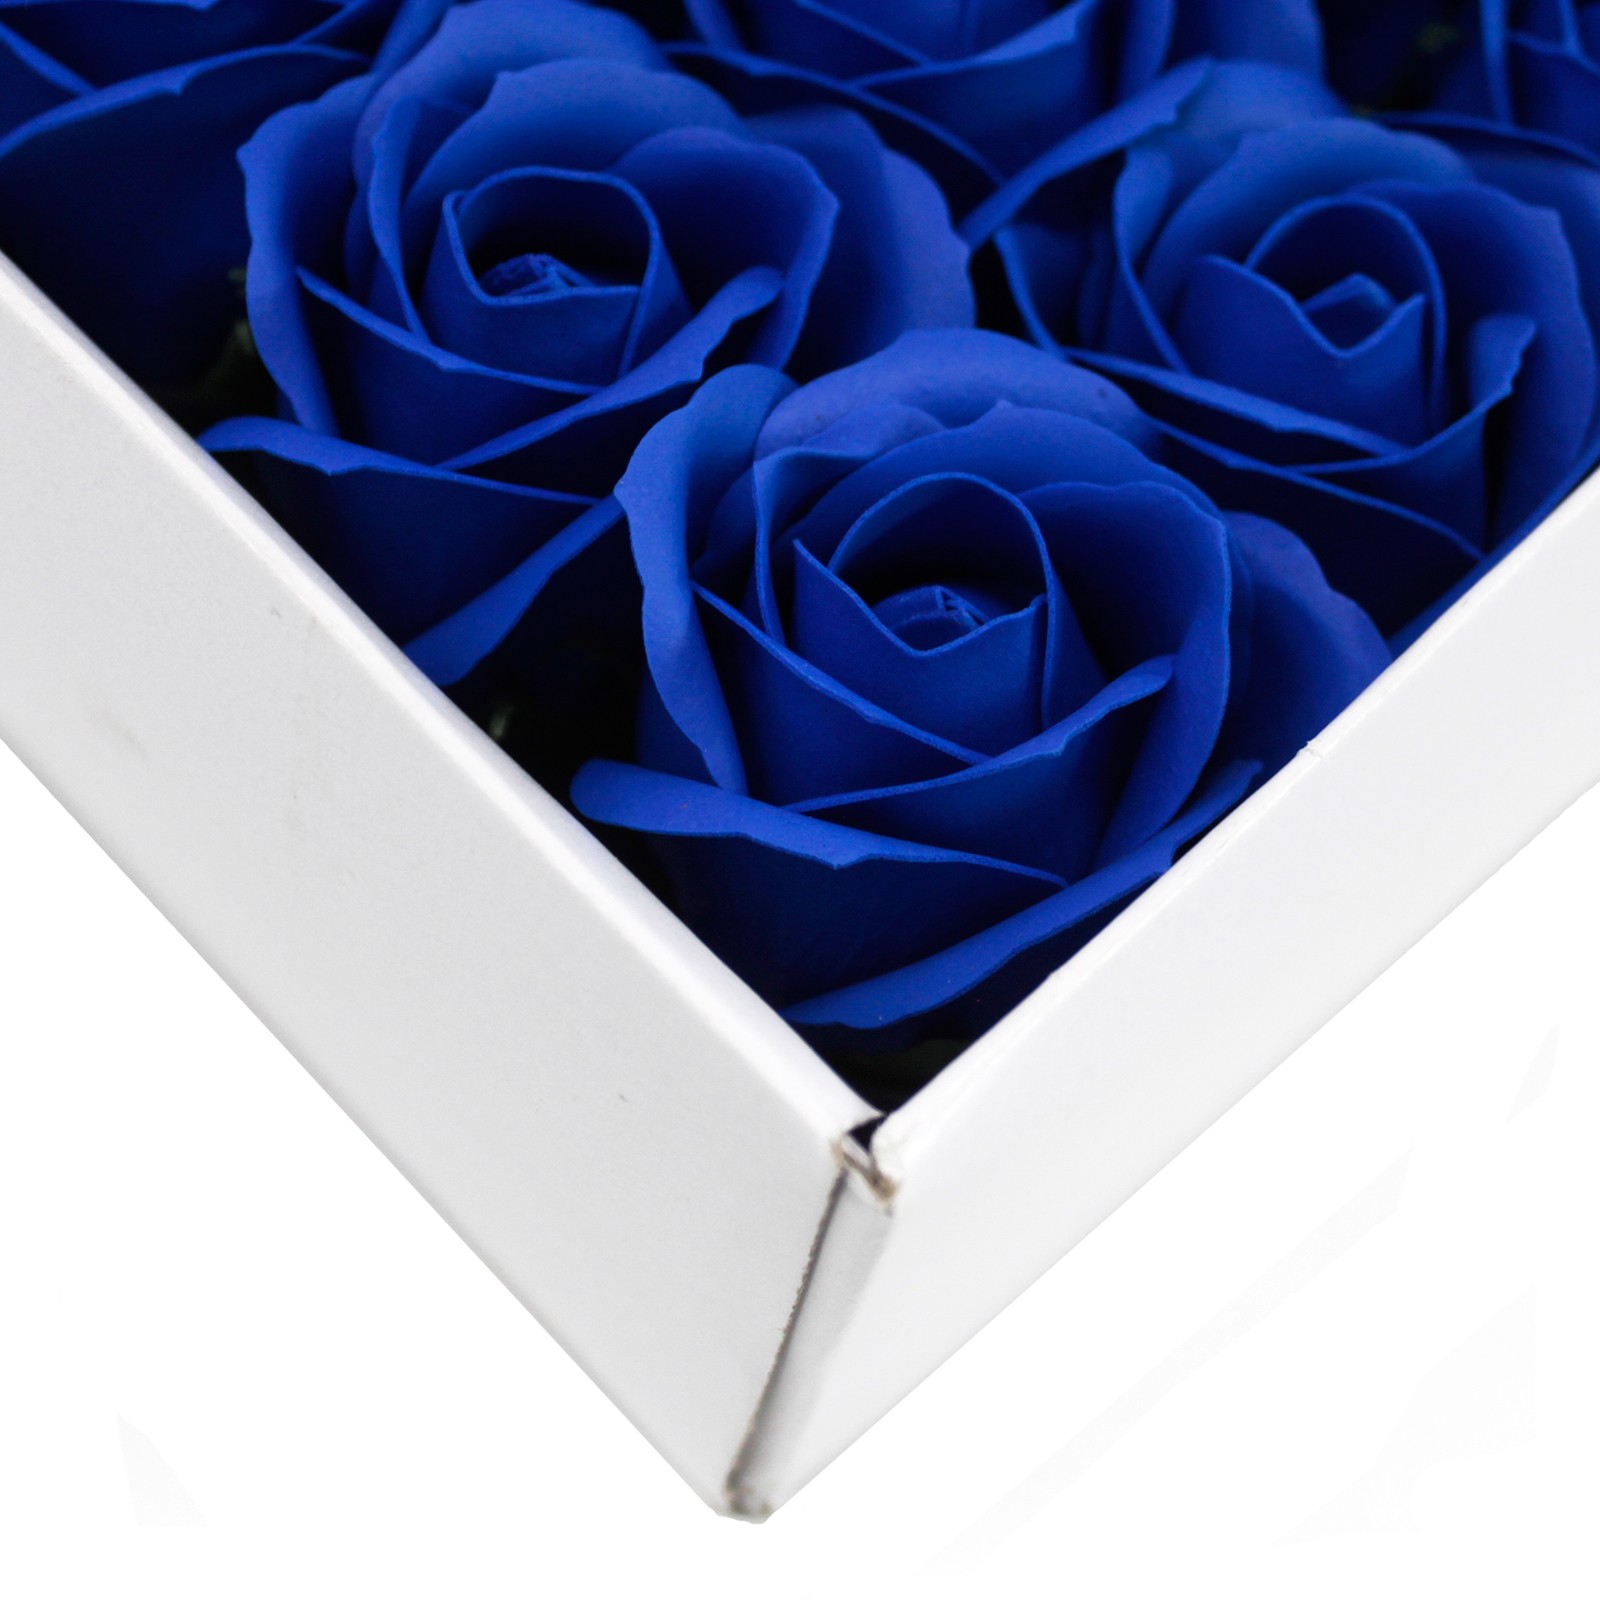 10 x Craft Soap Flowers - Med Rose - Royal Blue